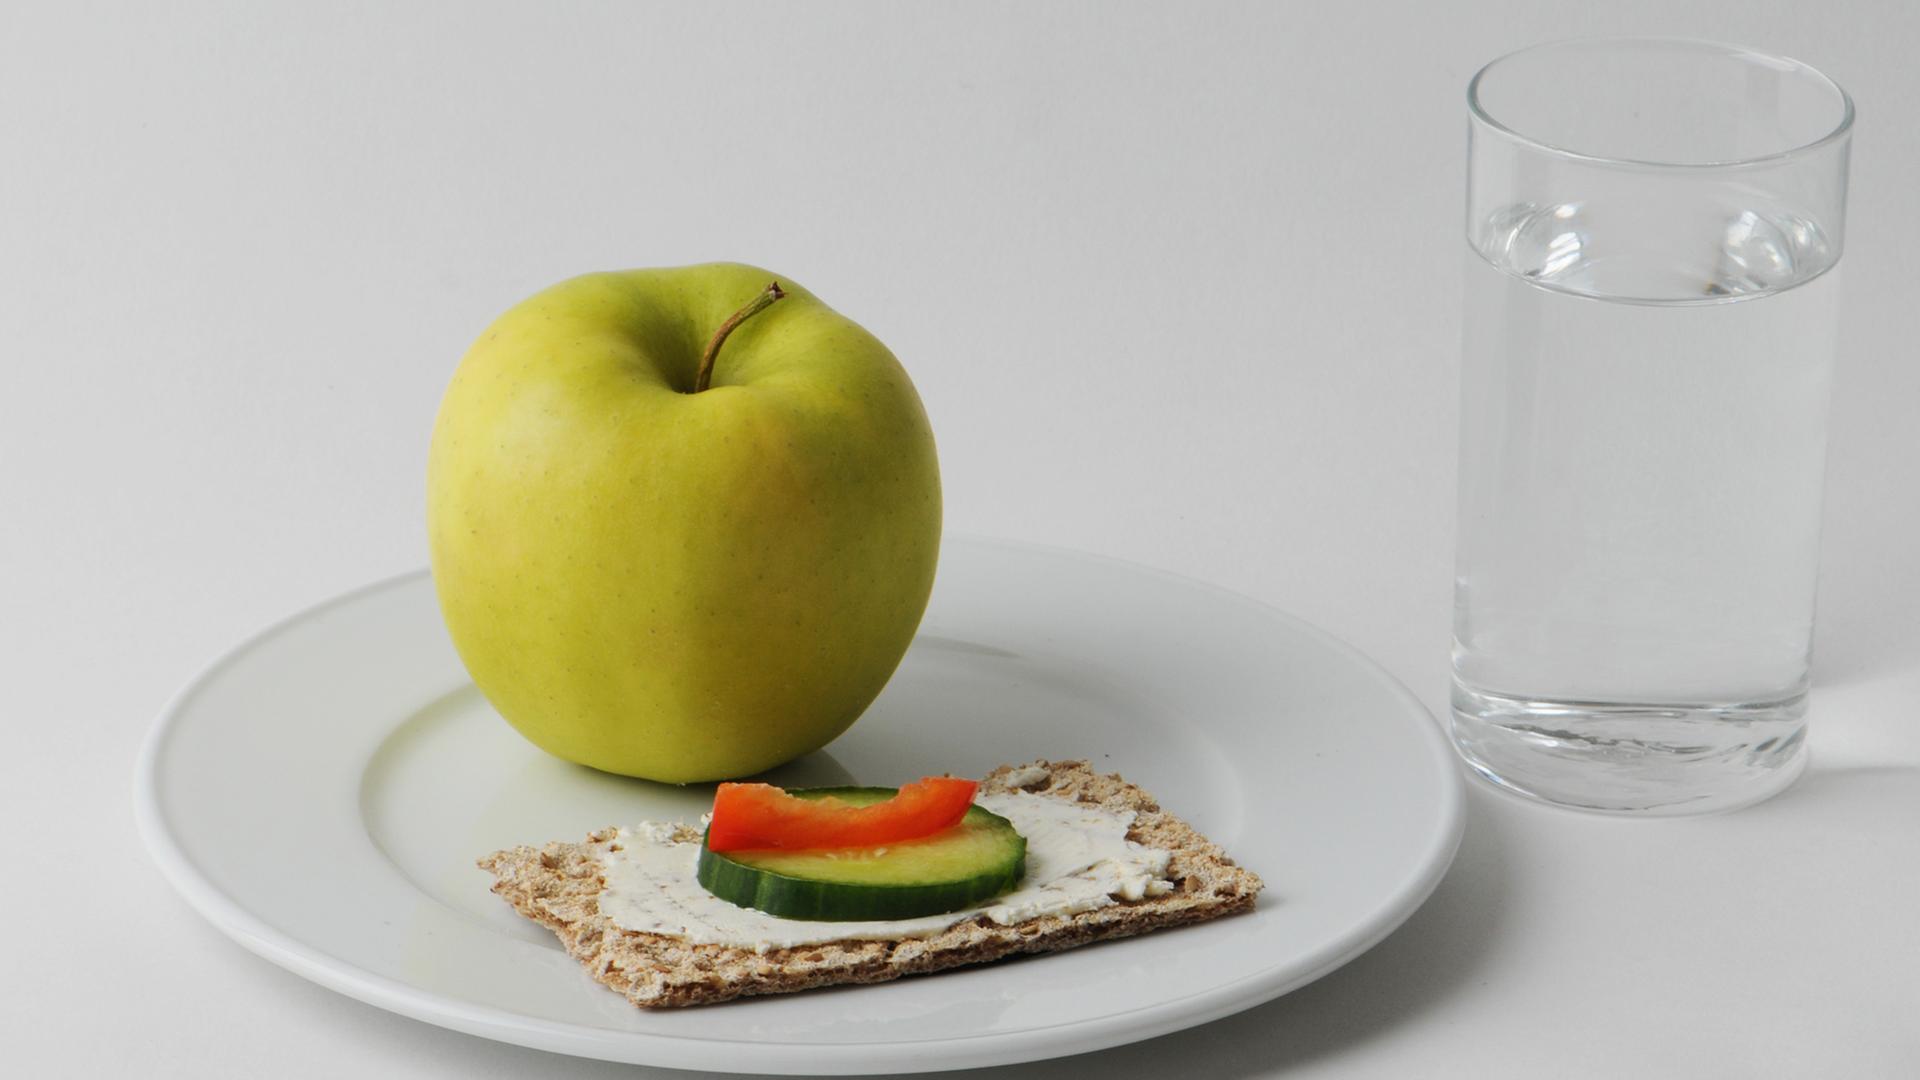 Ein Apfel und ein Knäckebrot neben einem Glas Wasser.